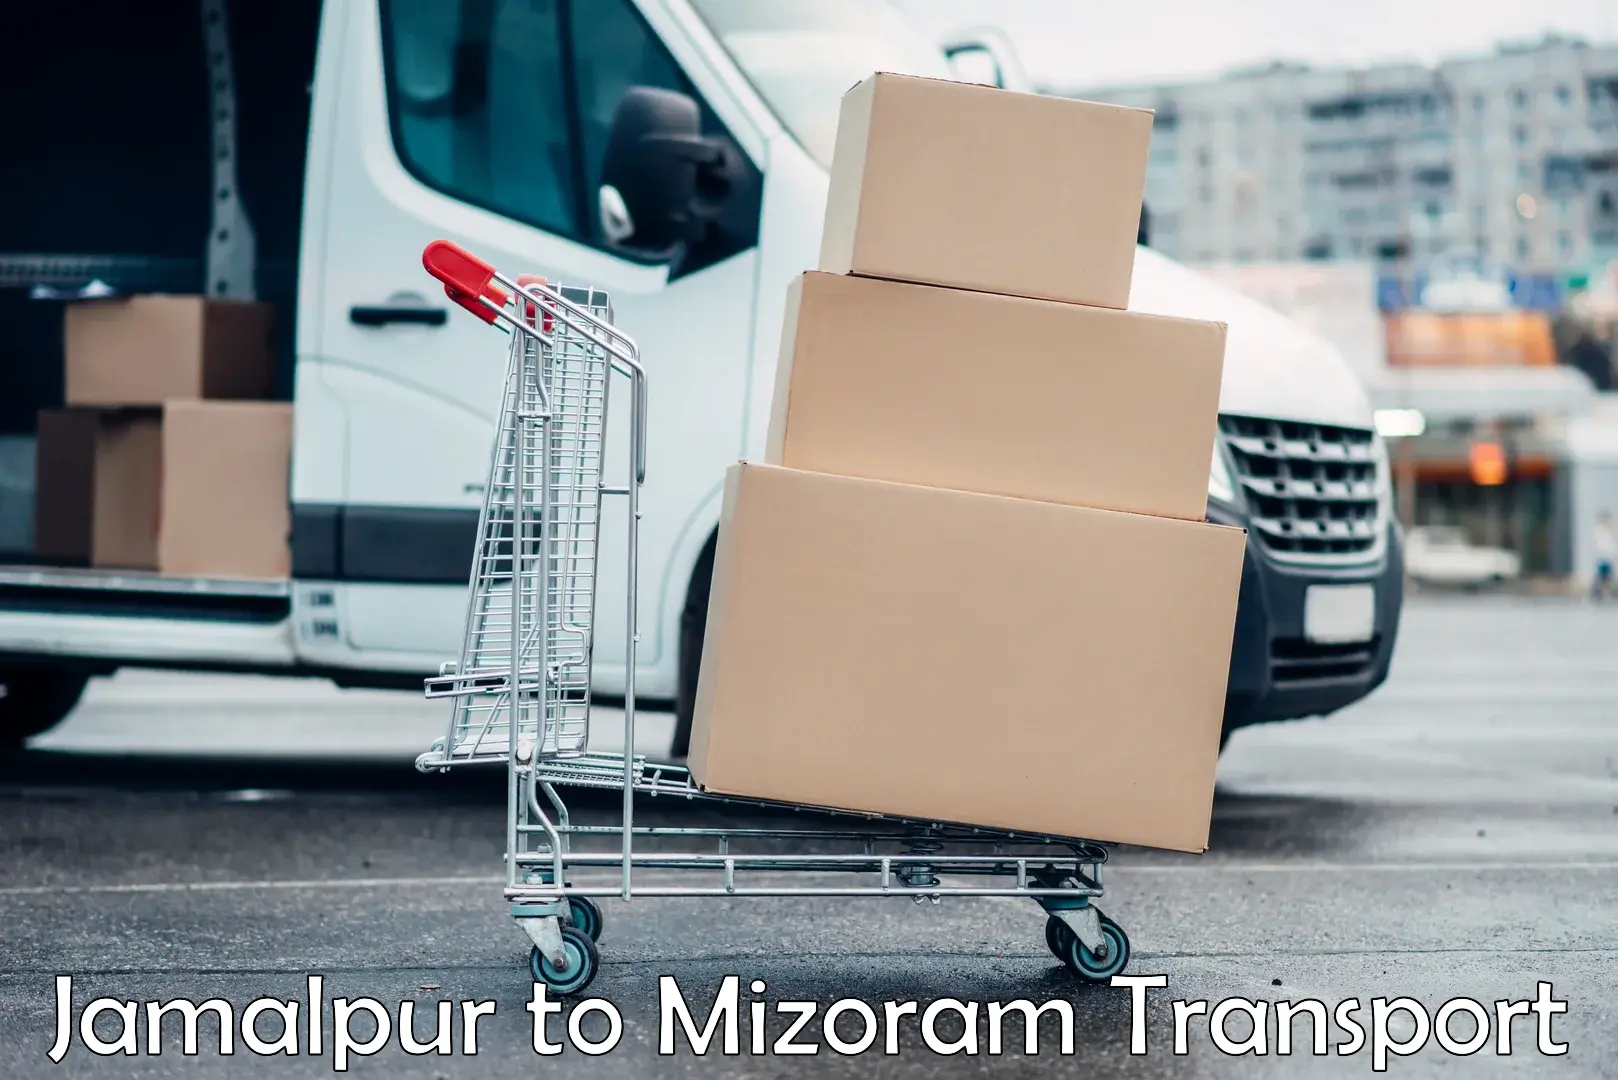 Online transport service Jamalpur to Darlawn